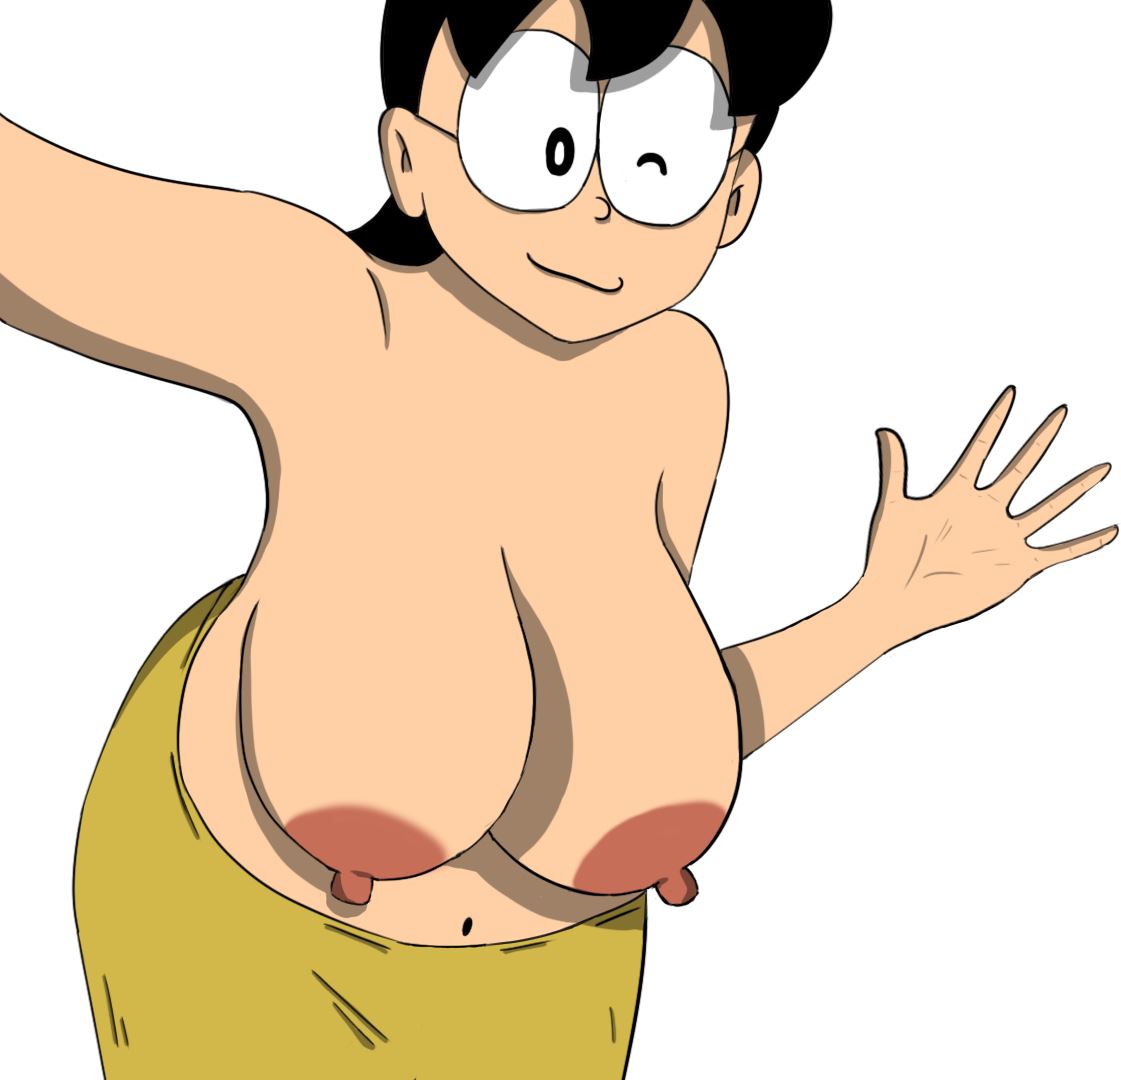 Bf Xxx Doremon - Ren'Py] Doraemon X - v0.8c by mayonnaisee 18+ Adult xxx Porn Game Download